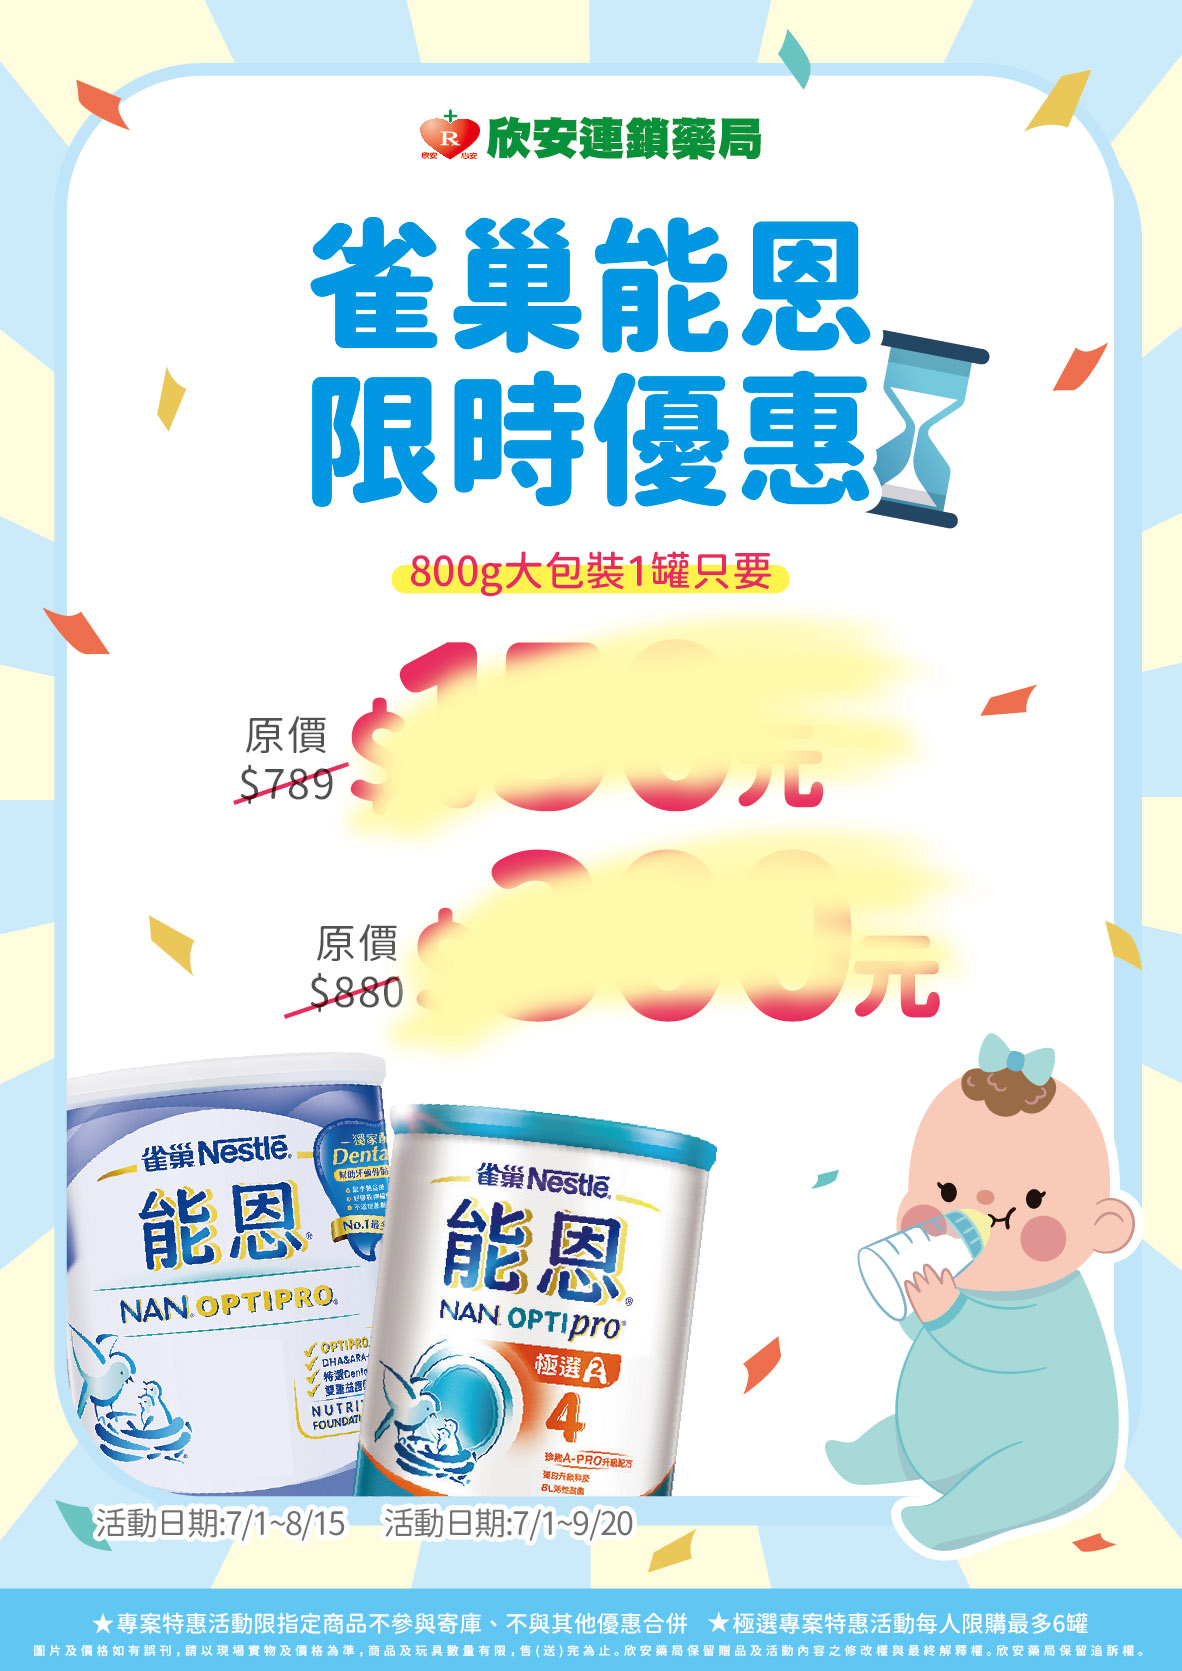 雀巢能恩 | 雀巢®超級能恩®1號配方奶粉 800G(7613033037511) | HKTVmall 香港最大網購平台